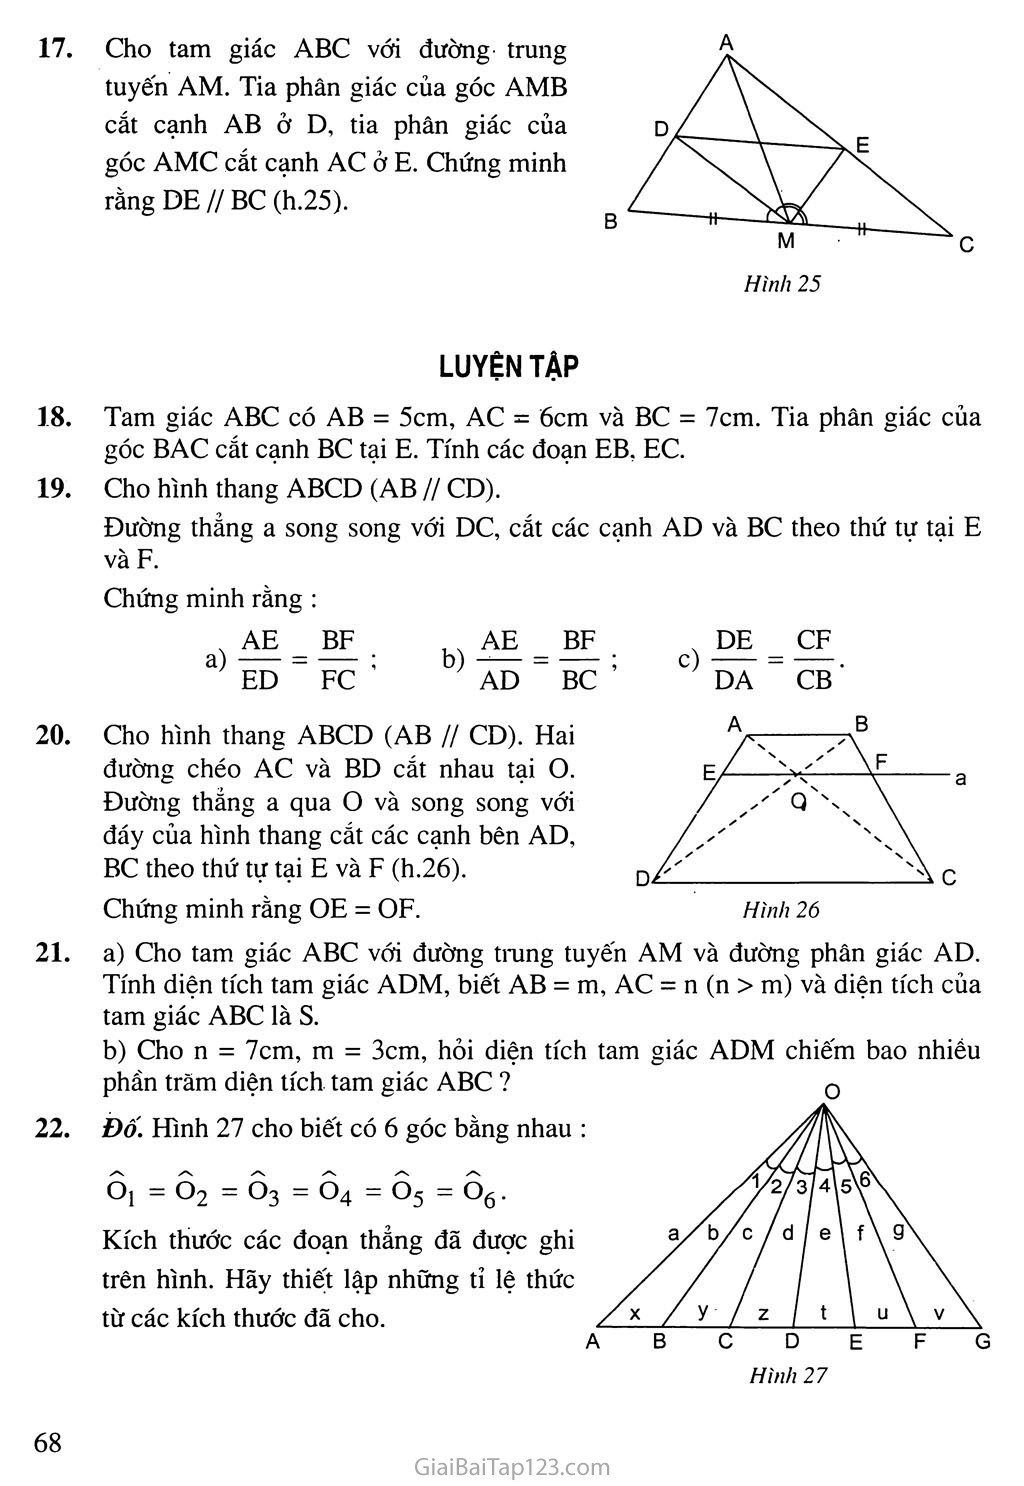 Bài 3. Tính chất đường phân giác của tam giác trang 4